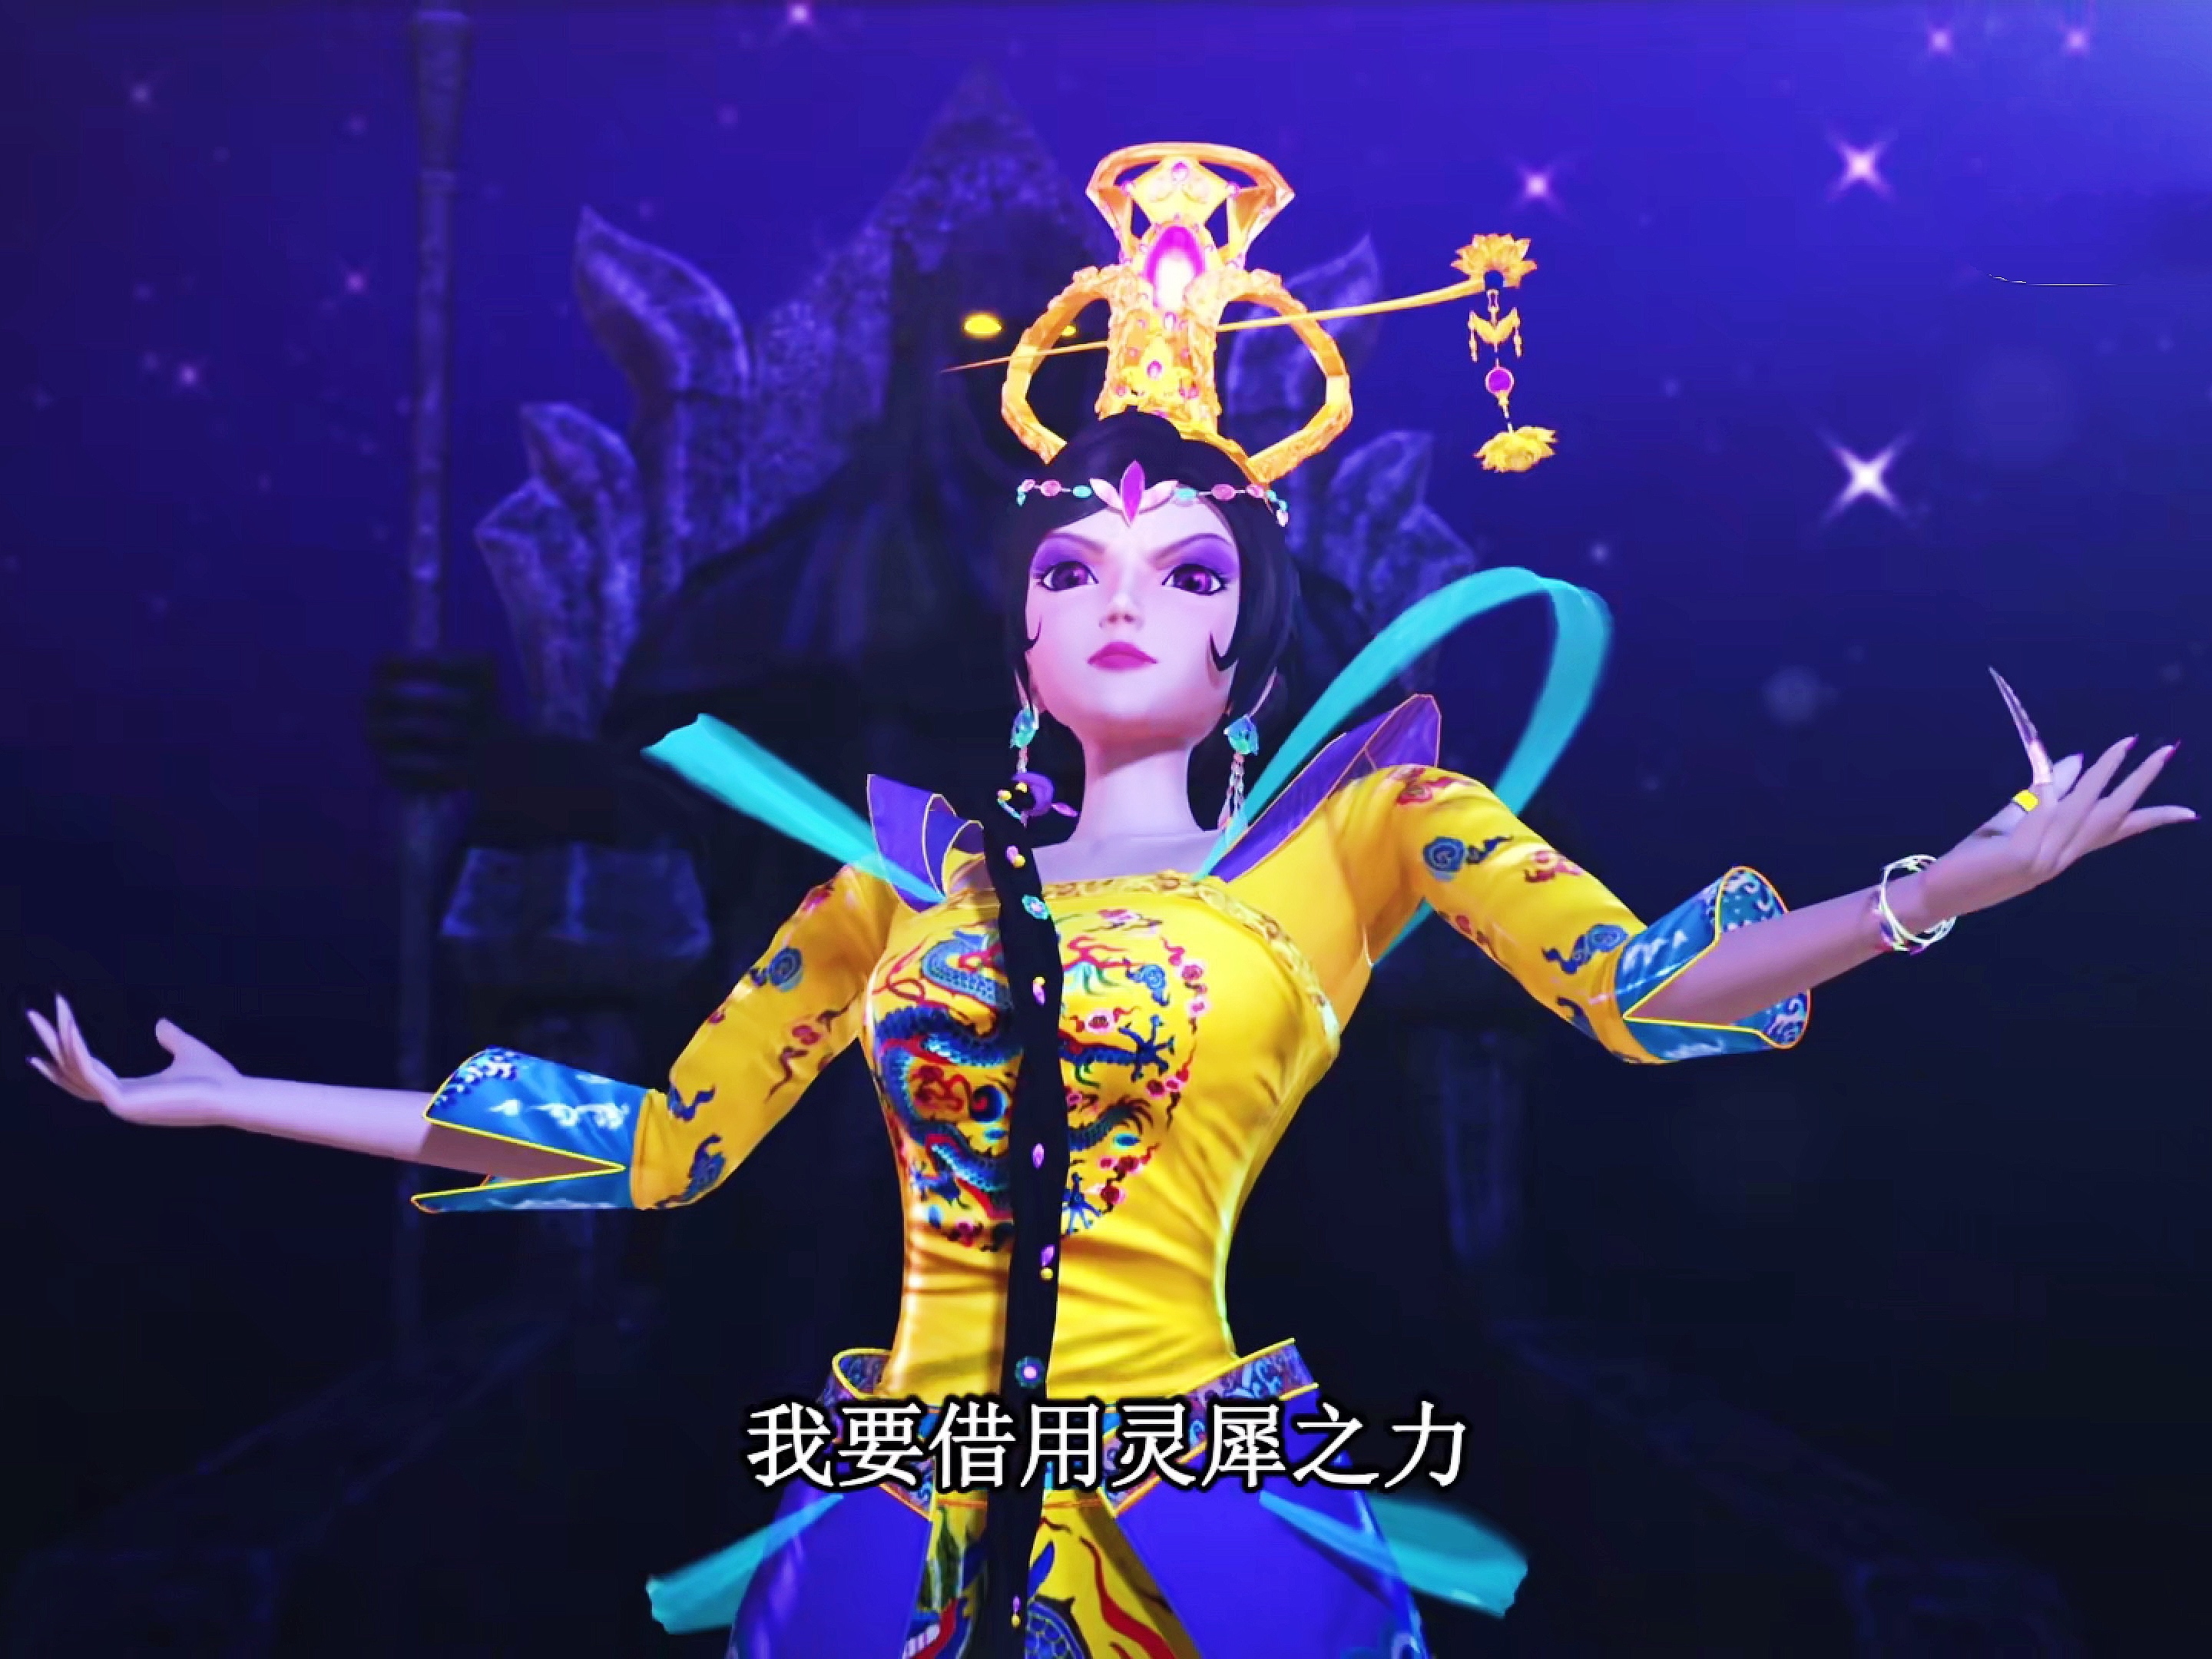 02 仙境中服饰最有代表性就是仙境女王曼多拉的服饰,一身象征着王者